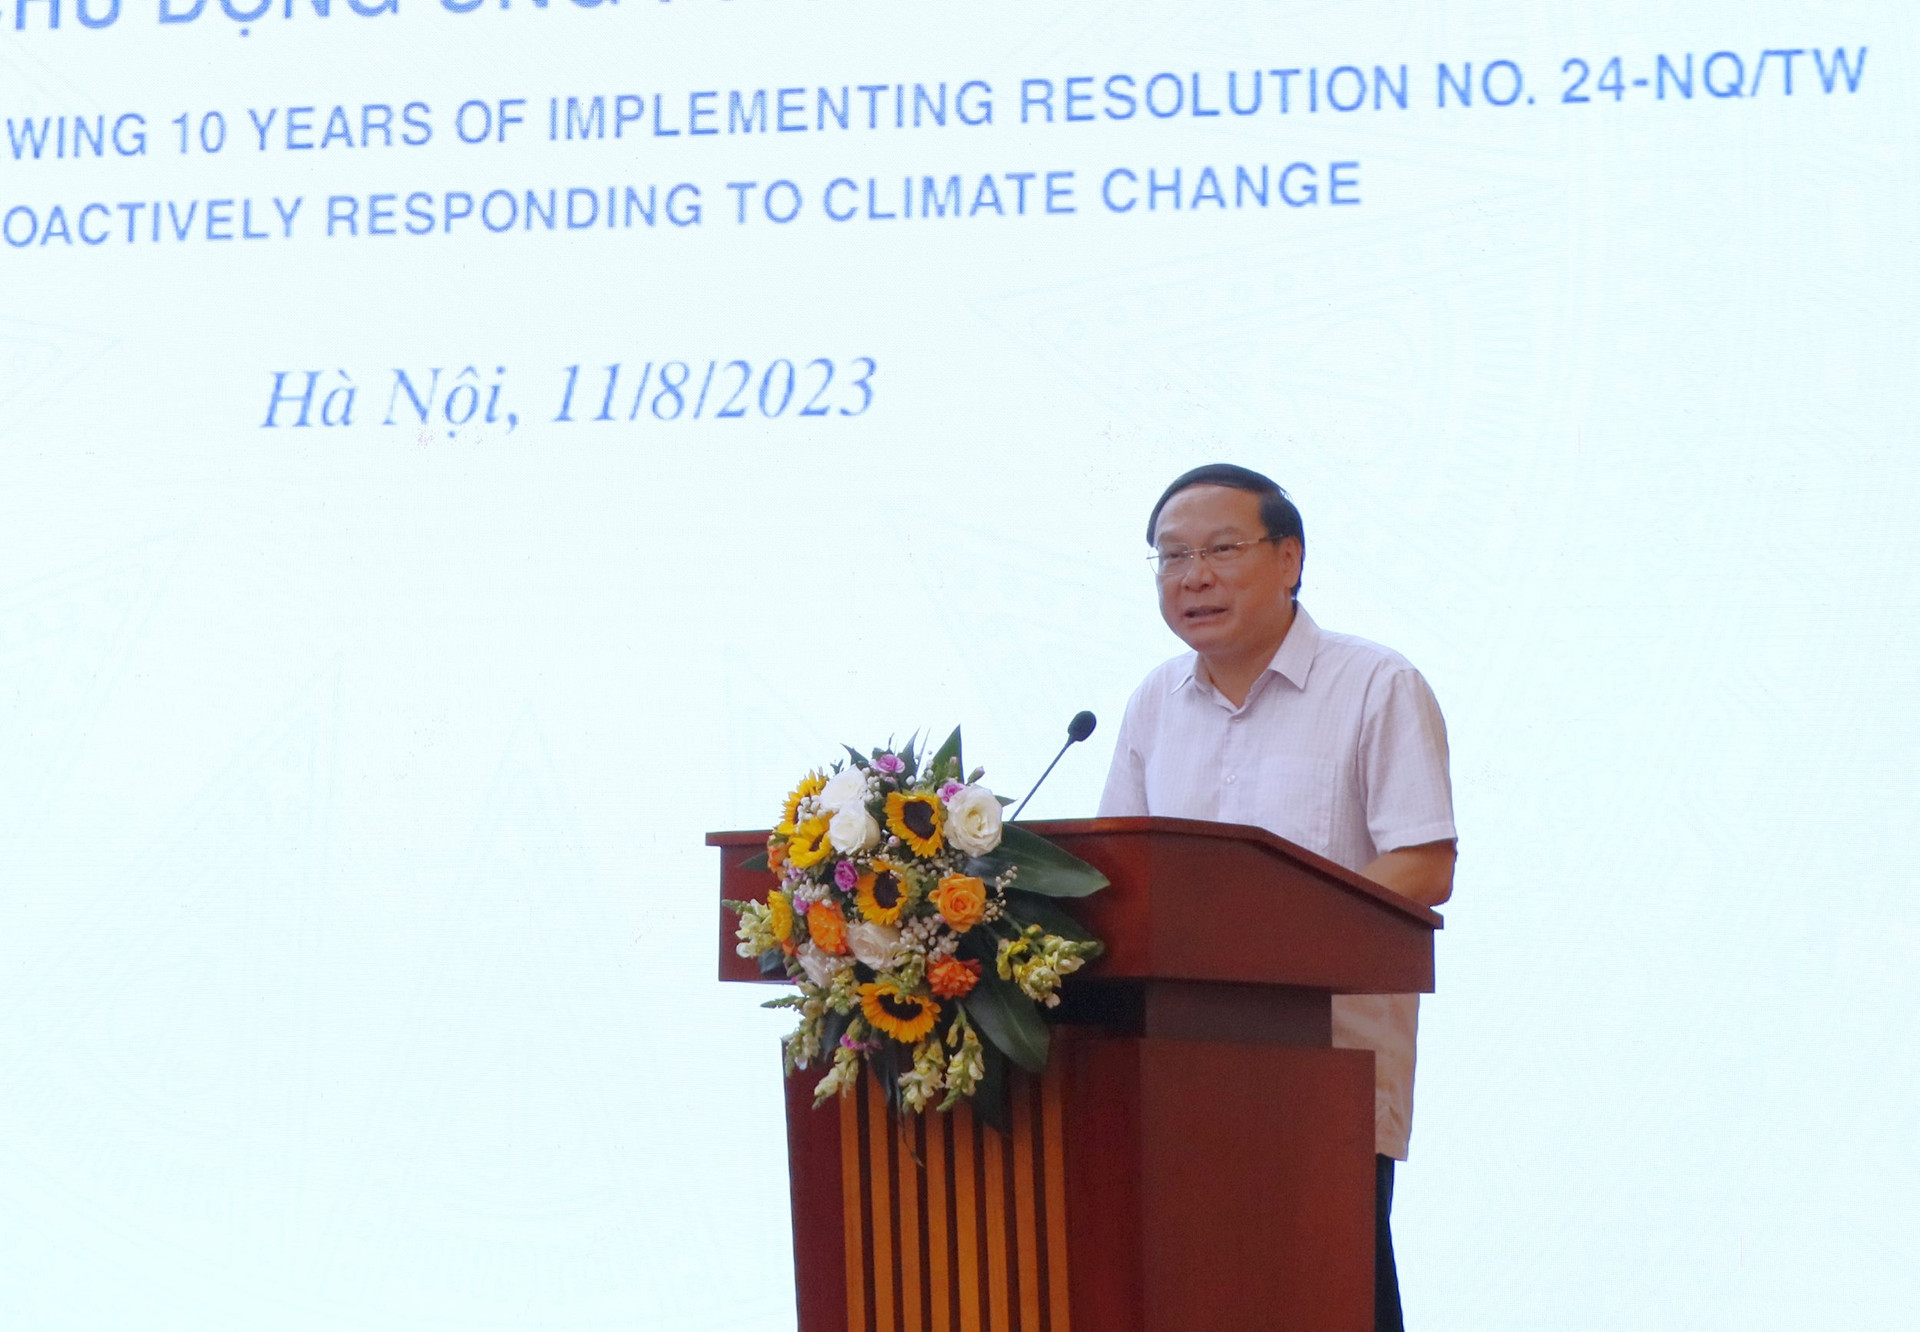 Tổng kết Nghị quyết 24-NQ/TW về ứng phó biến đổi khí hậu - Nhiều điểm sáng